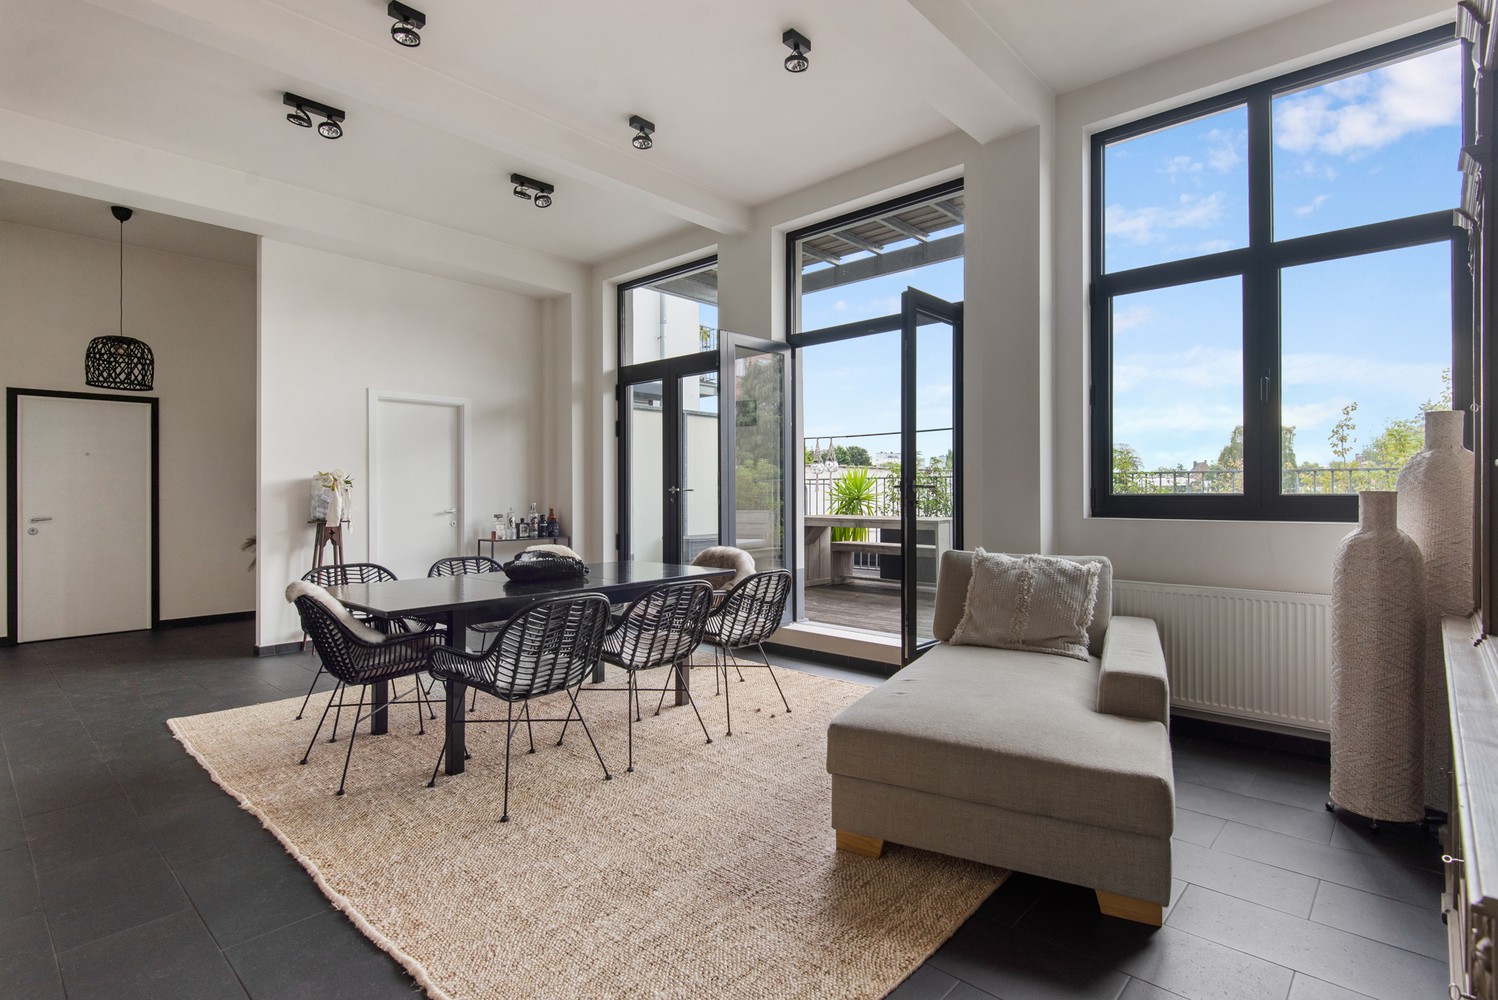 Stijlvolle loft met 2 à 3 slaapkamers en Z-terras te Antwerpen! afbeelding 4